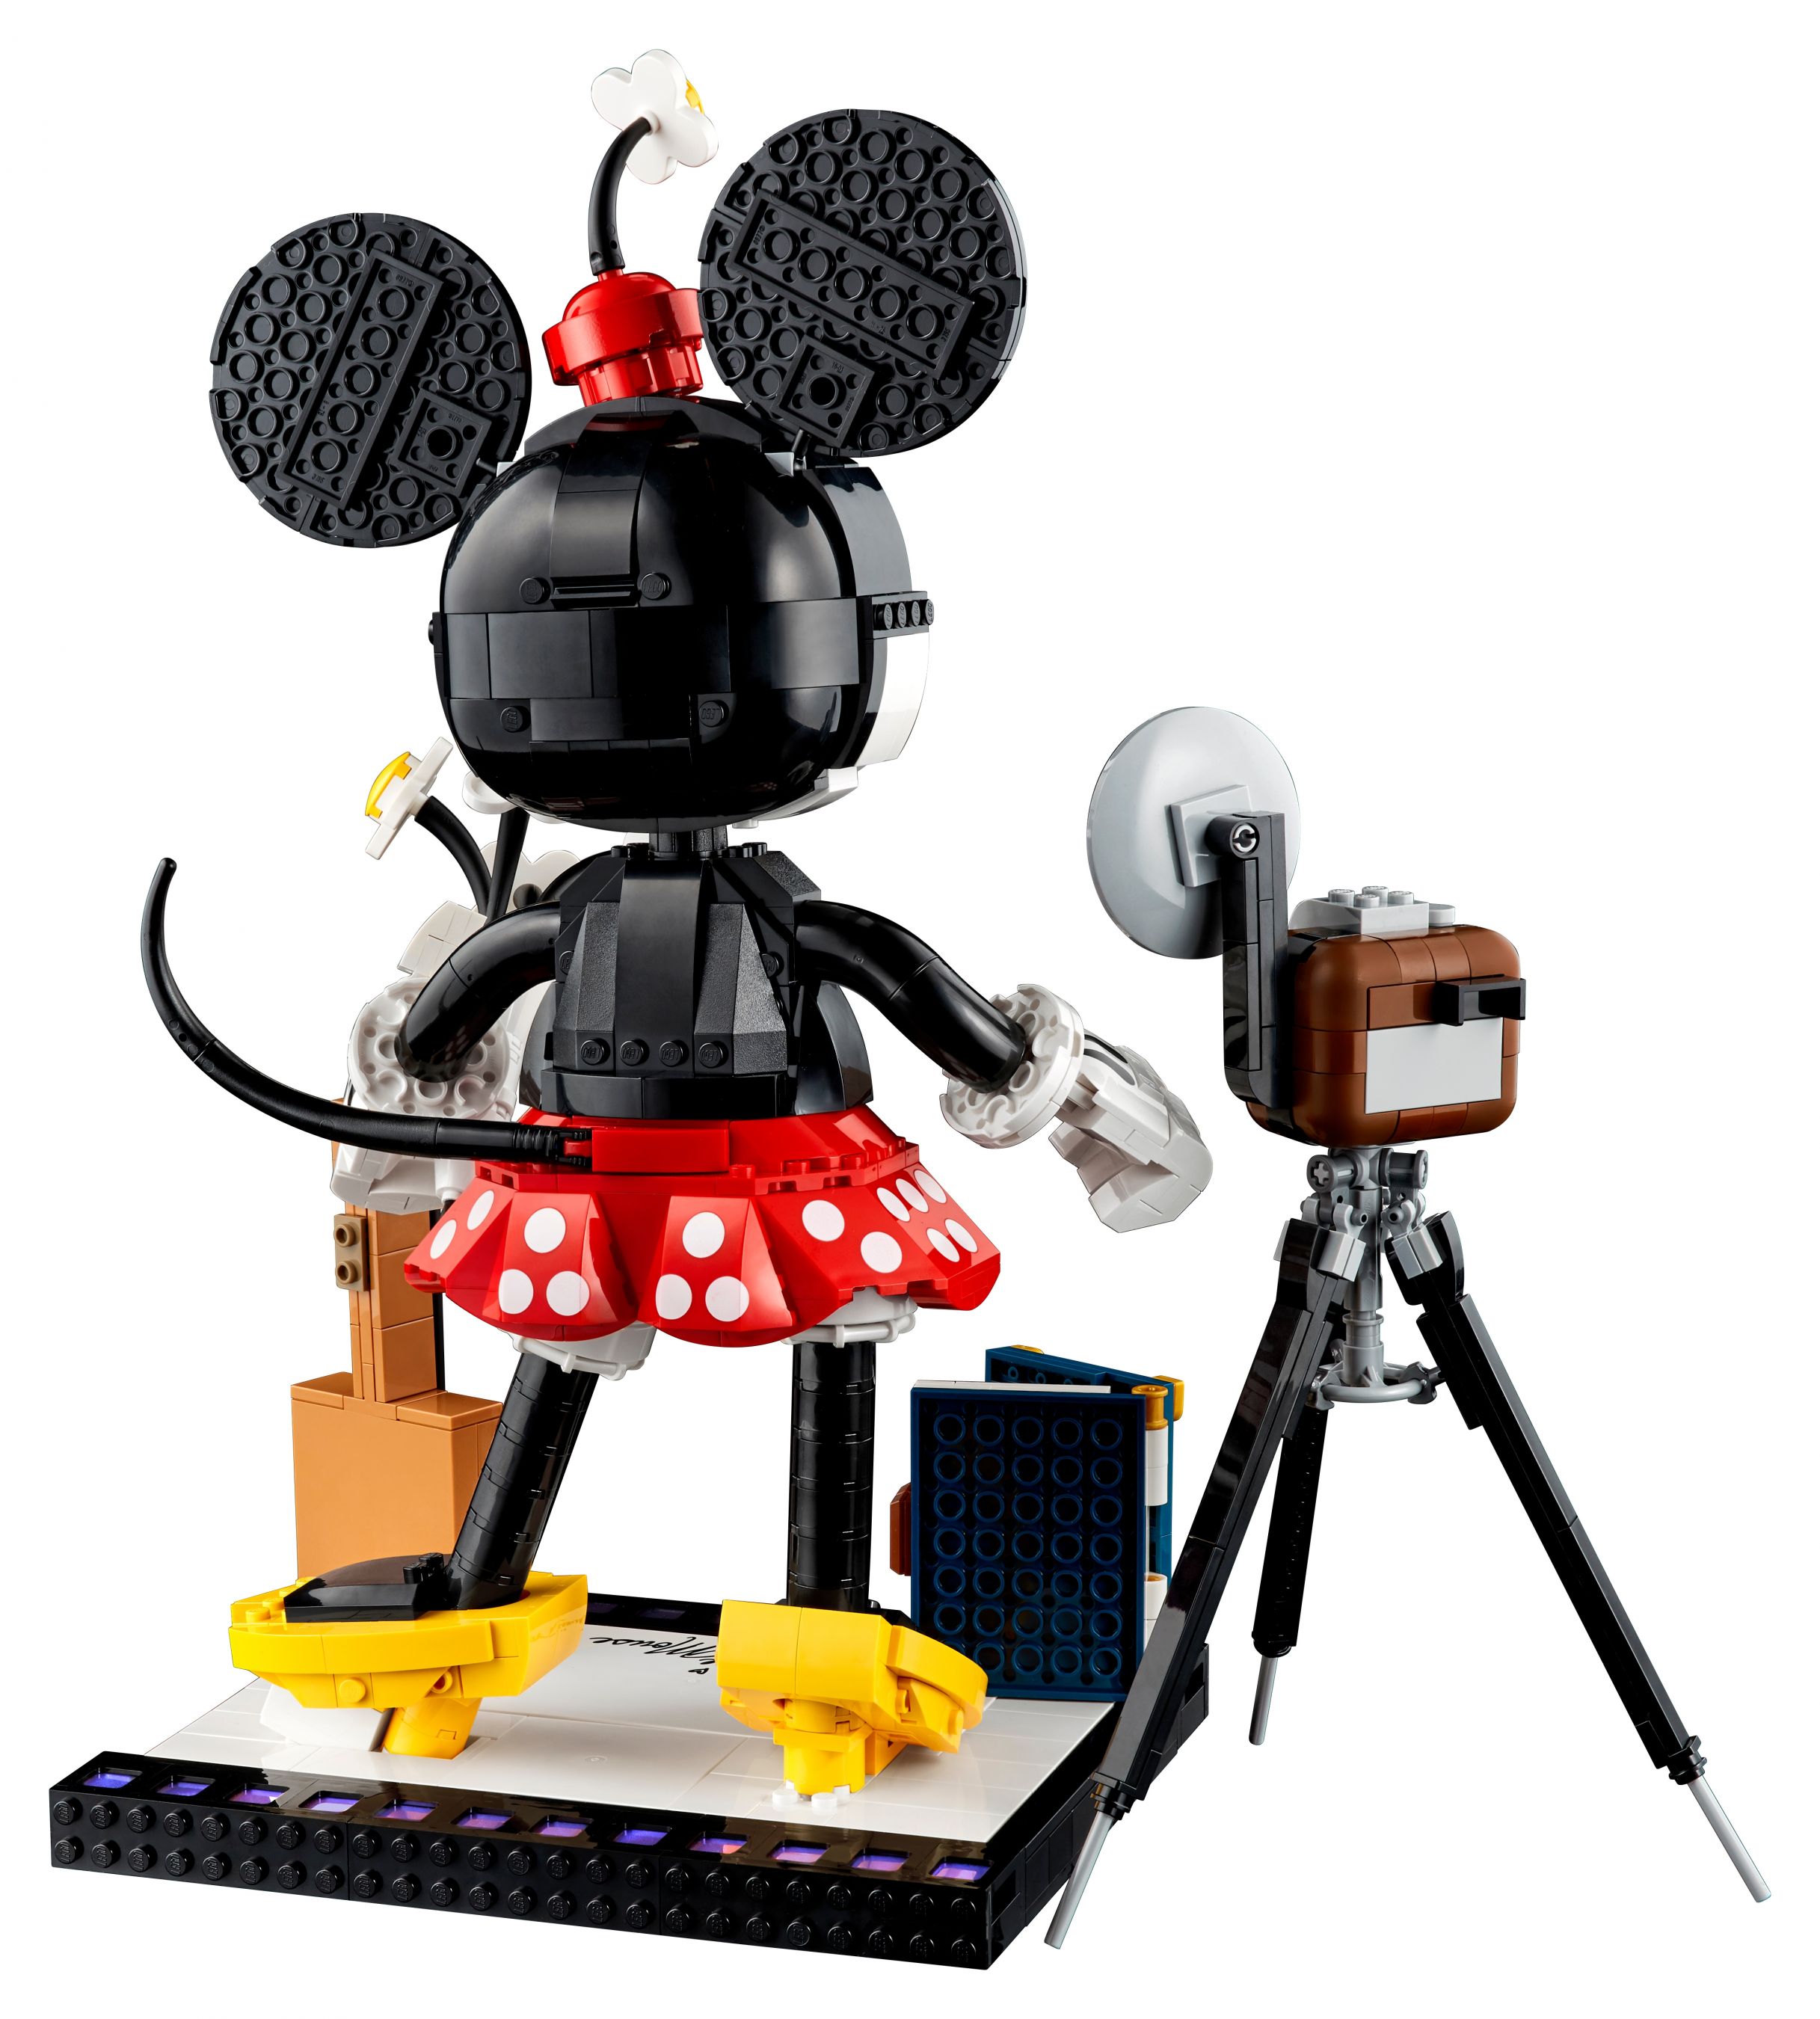 LEGO Disney 43179 Micky Maus und Minnie Maus LEGO_43179_alt9.jpg